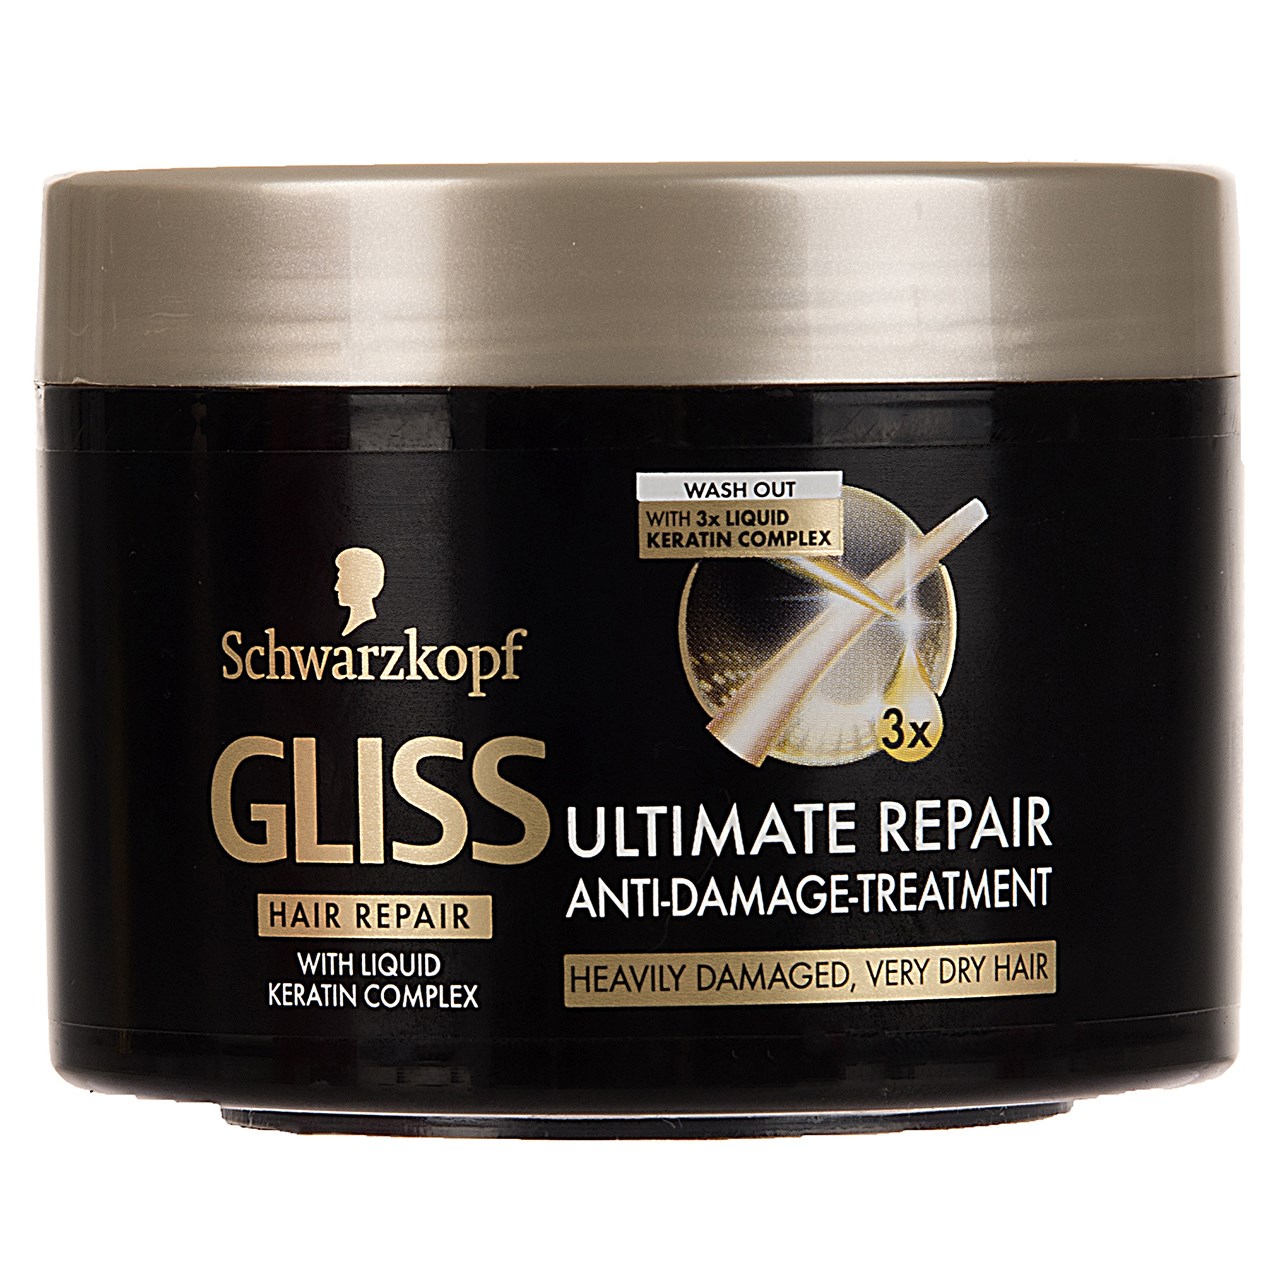 ماسک مو ترمیم کننده موهای خشک و آسیب دیده گلیس سری Hair Repair مدل Ultimate Repair حجم 200 میلی لیتر